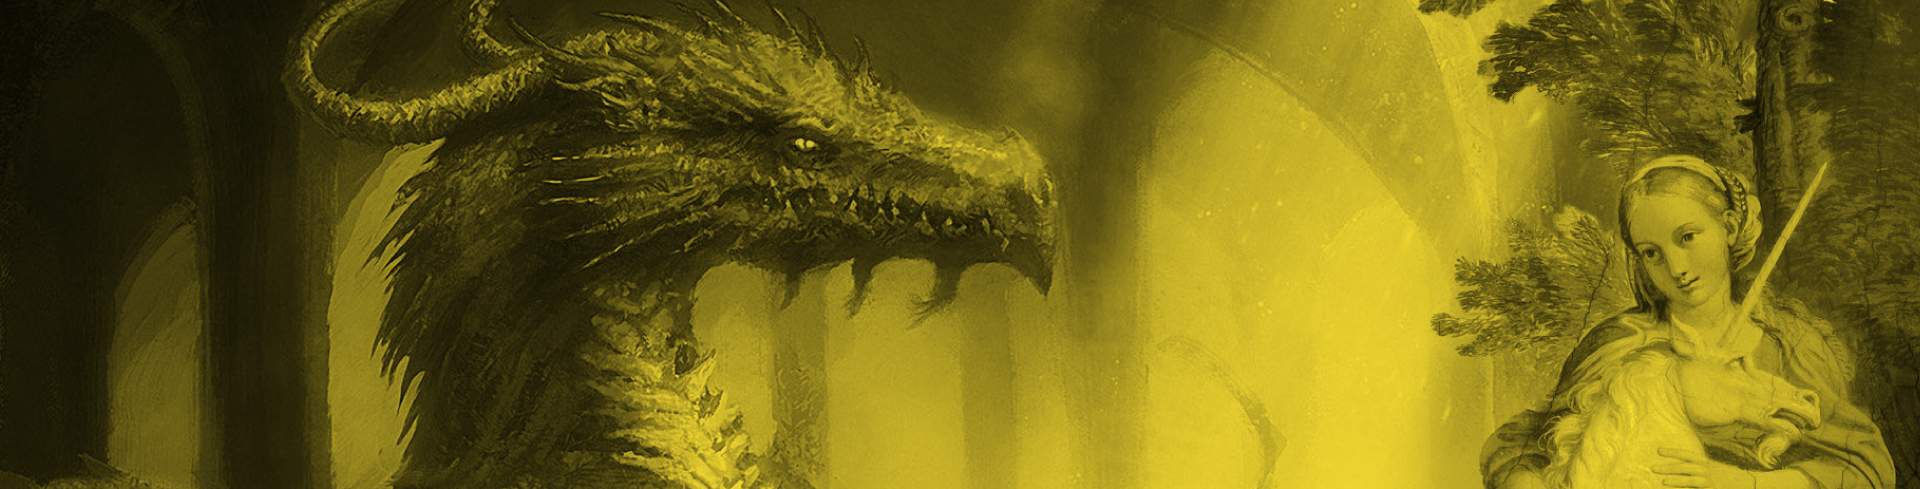 Dragones, hadas y unicornios: una introducción a la literatura fantástica